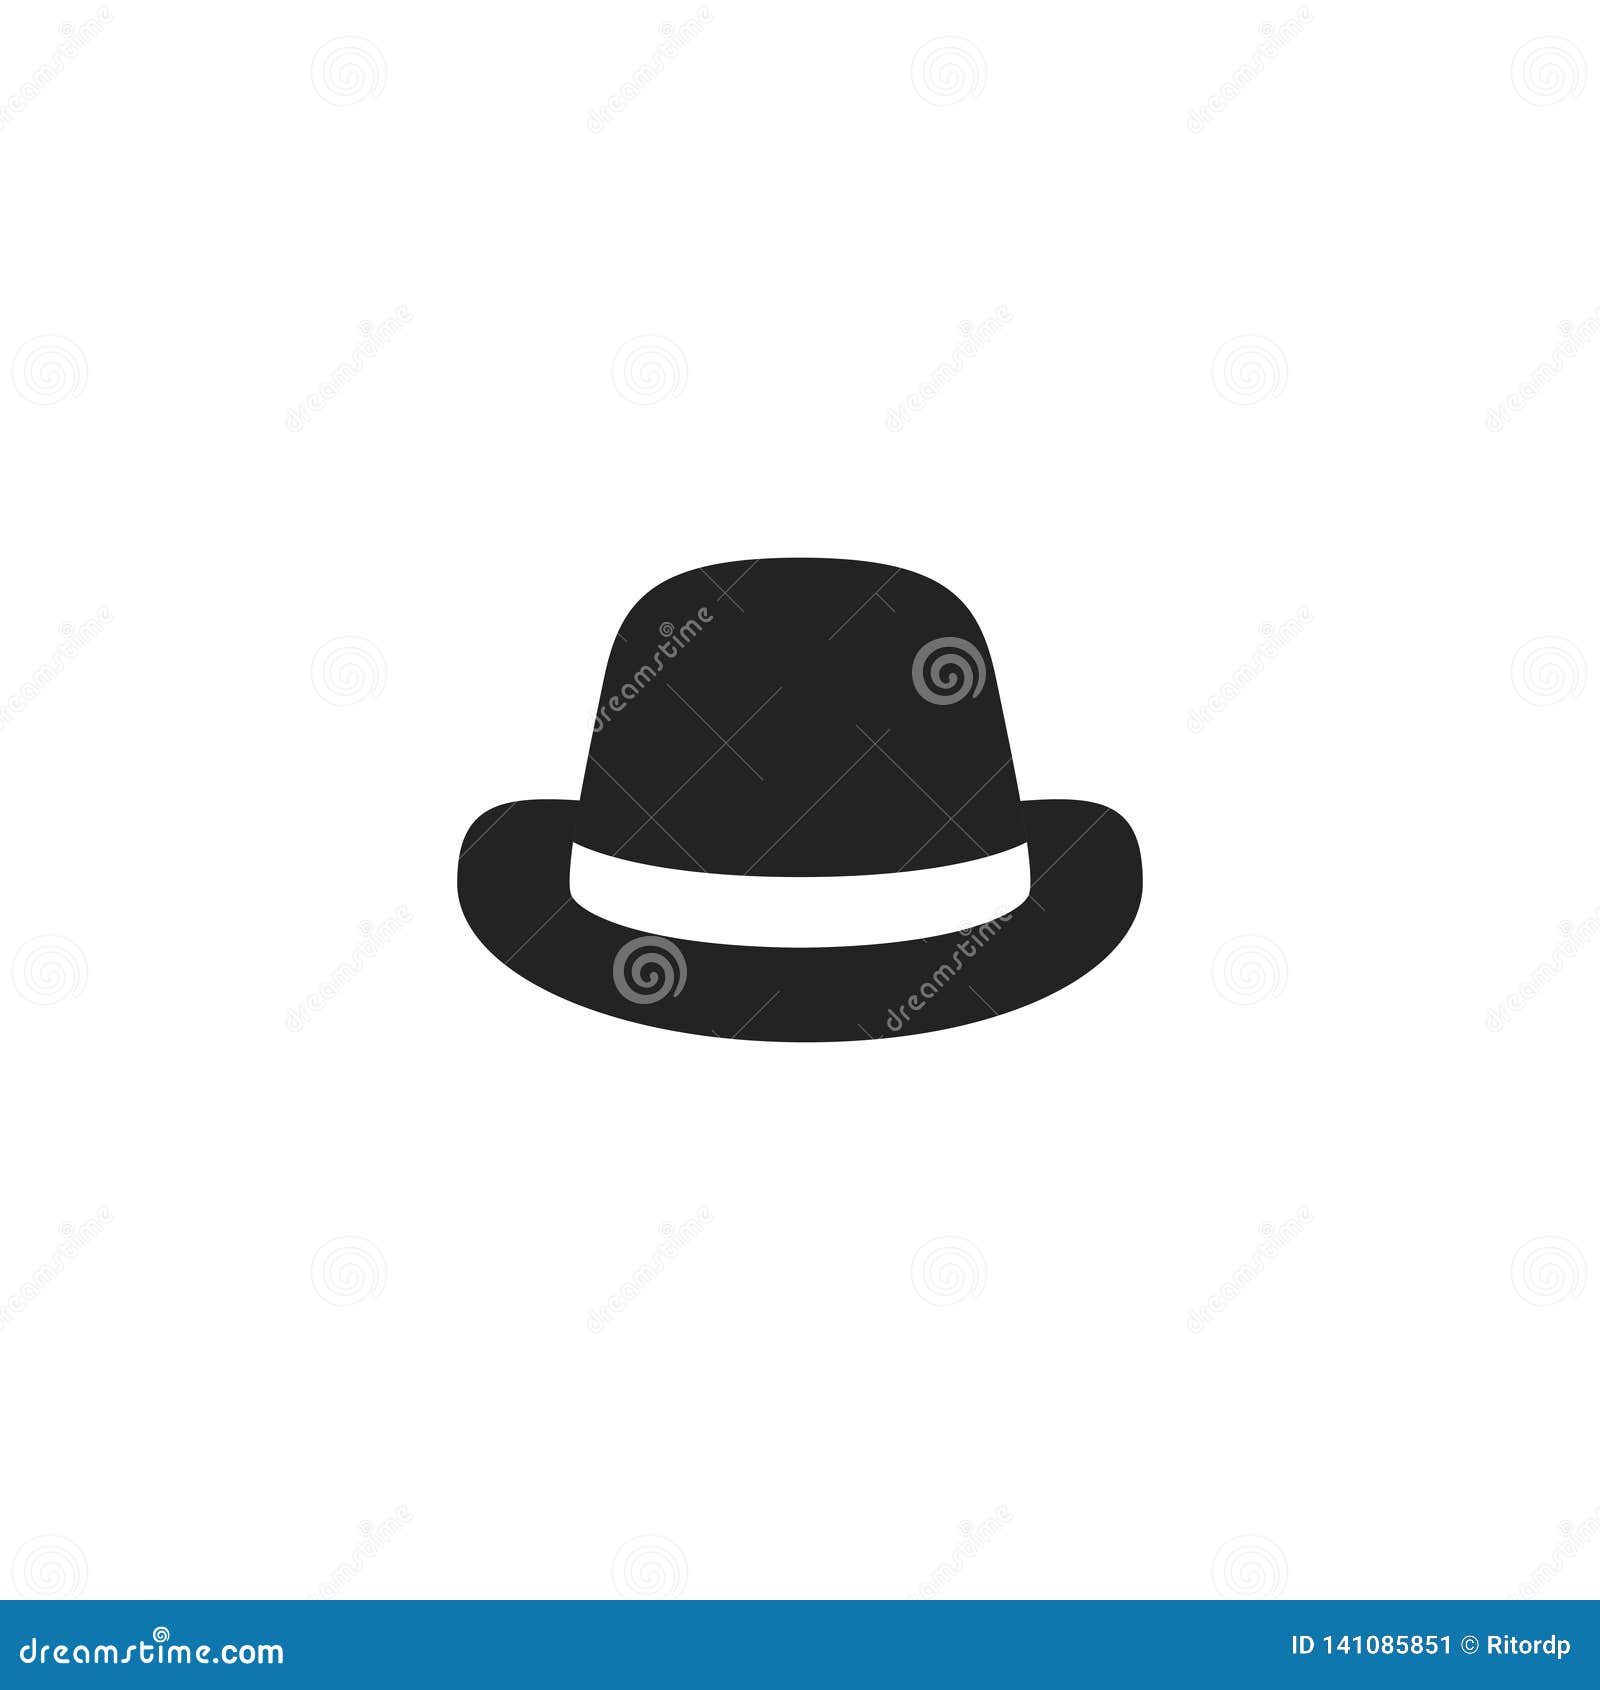 Retro Hat Glyph Vector Icon, Symbol or Logo. Stock Vector ...